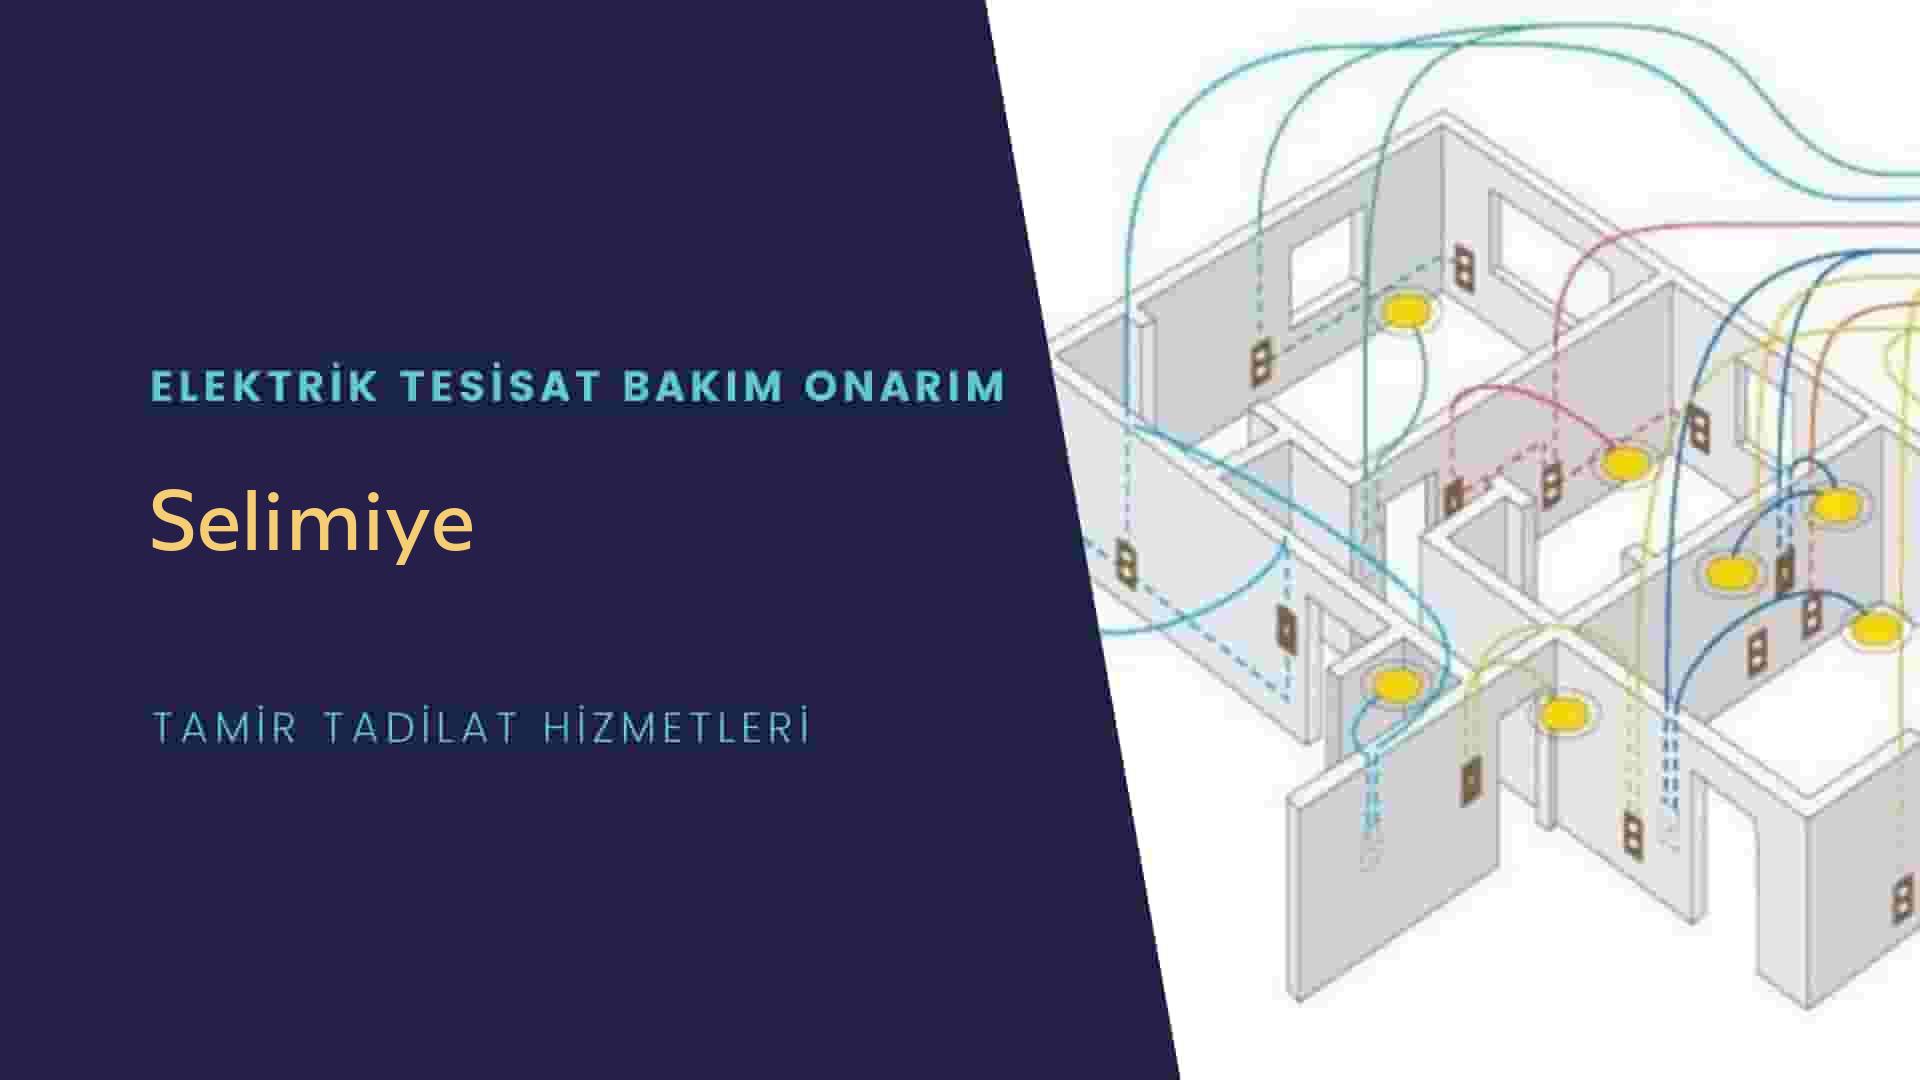 Selimiye'de elektrik tesisatı ustalarımı arıyorsunuz doğru adrestenizi Selimiye elektrik tesisatı ustalarımız 7/24 sizlere hizmet vermekten mutluluk duyar.